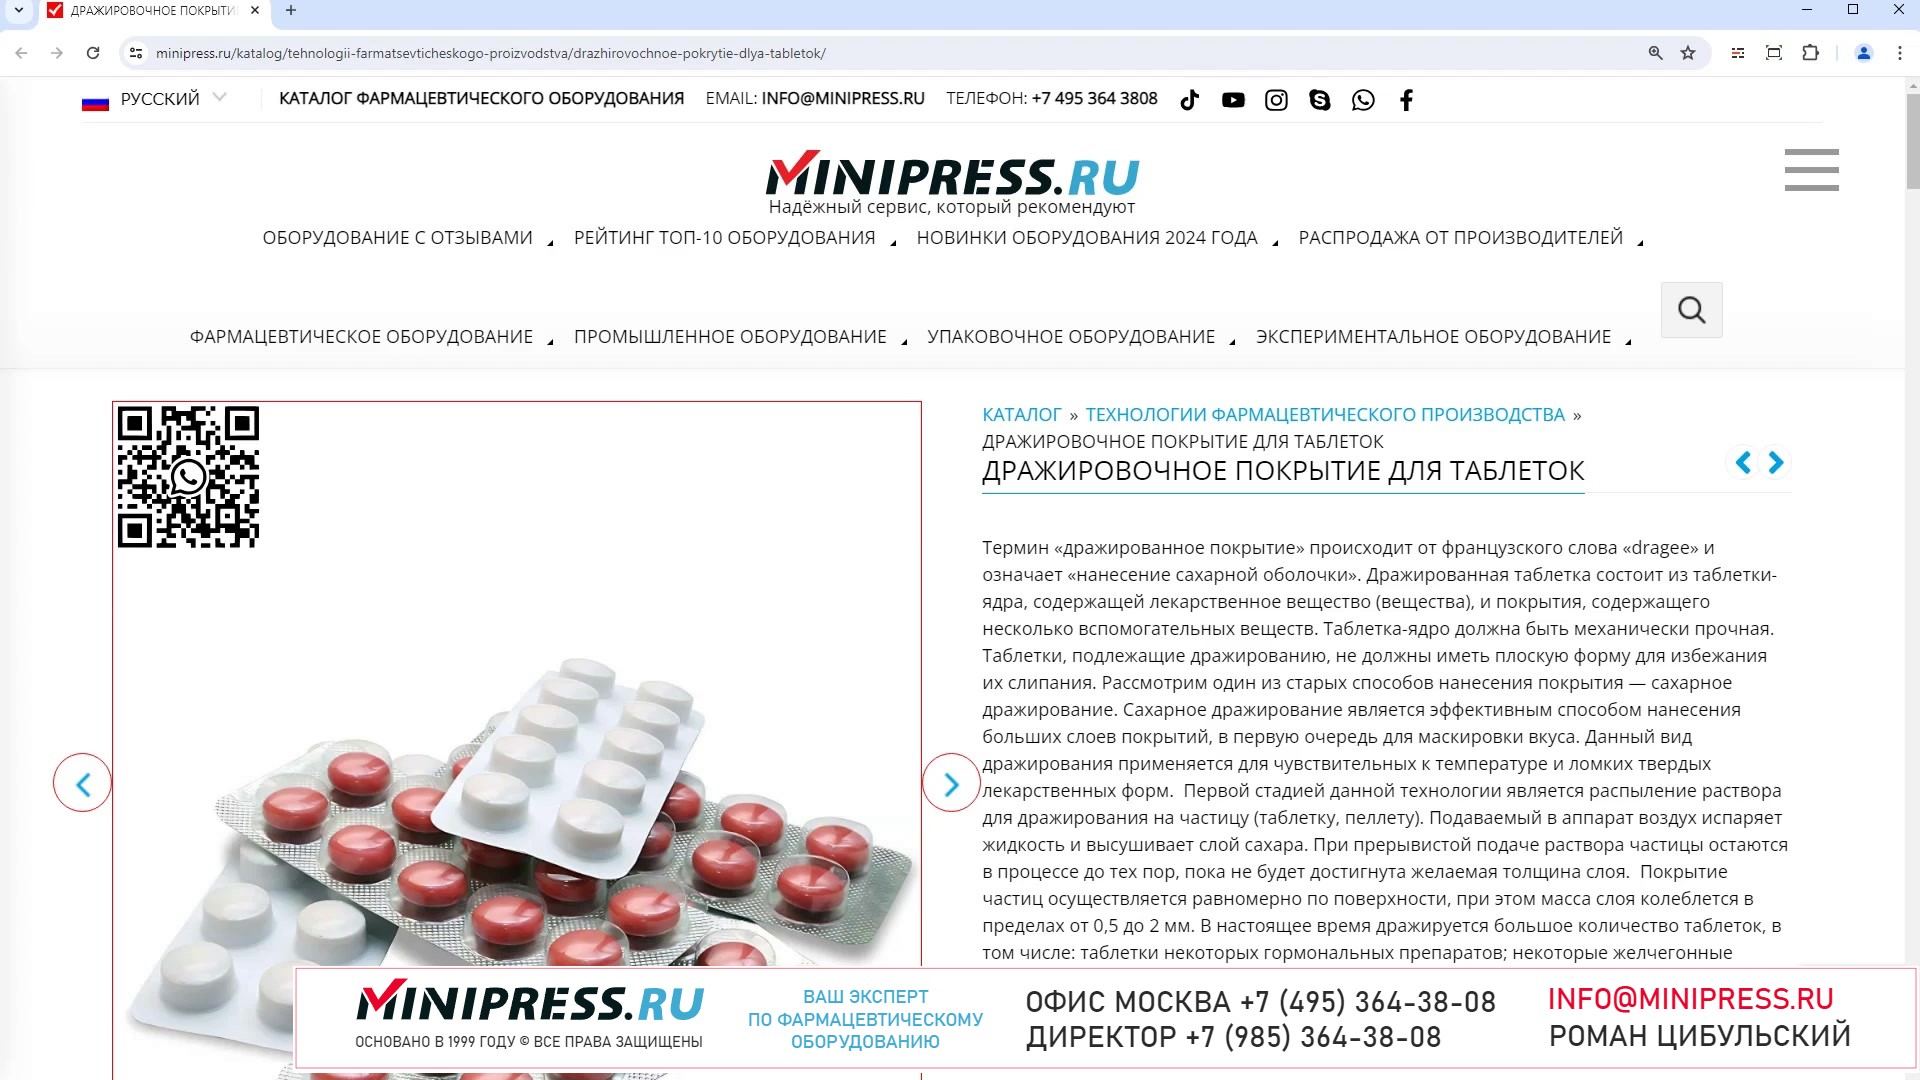 Minipress.ru Дражировочное покрытие для таблеток